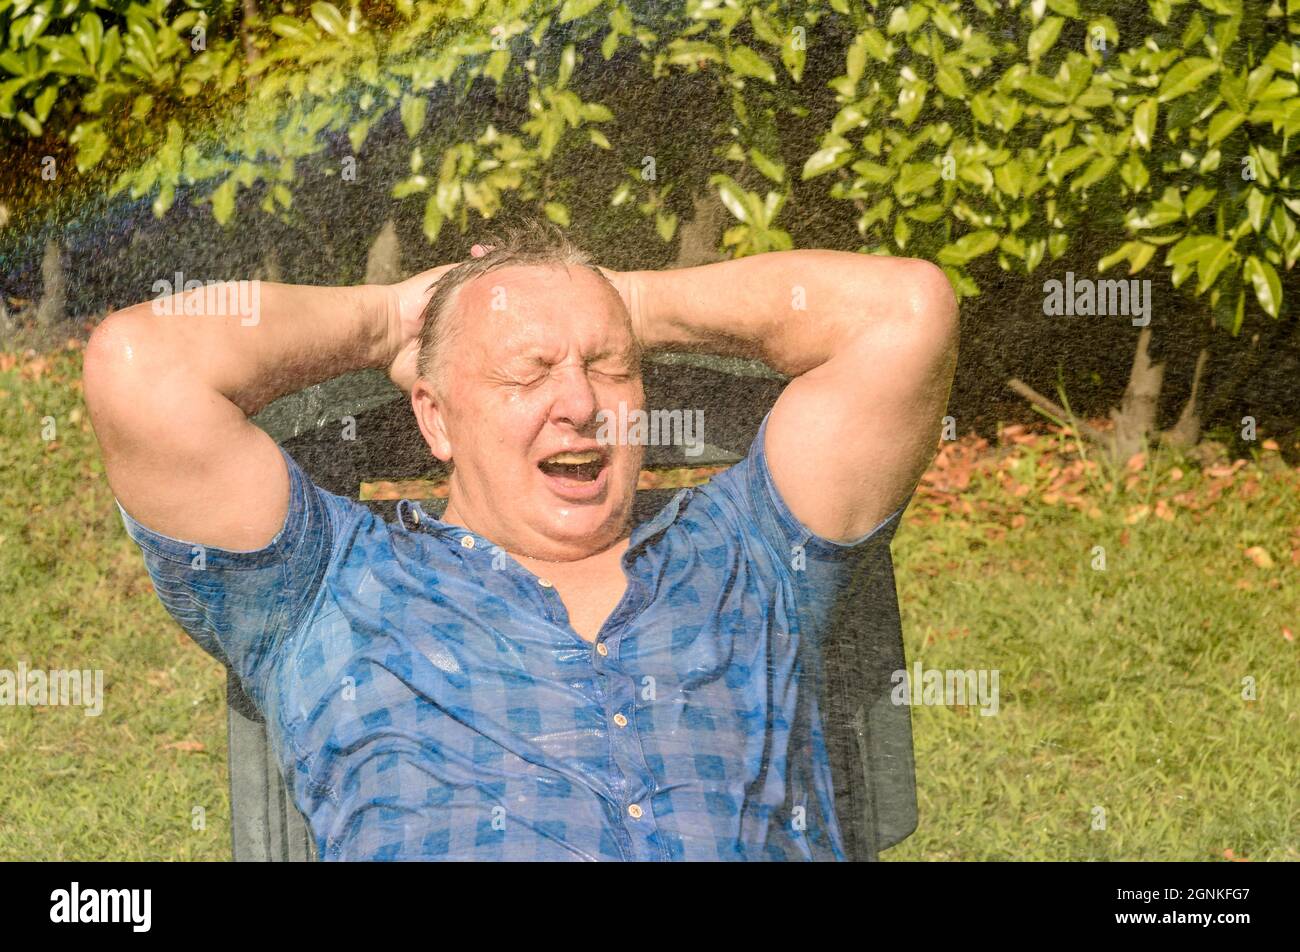 Portrait d'un homme mûr heureux sous l'eau des éclaboussures lors d'une journée chaude dans le jardin. Banque D'Images